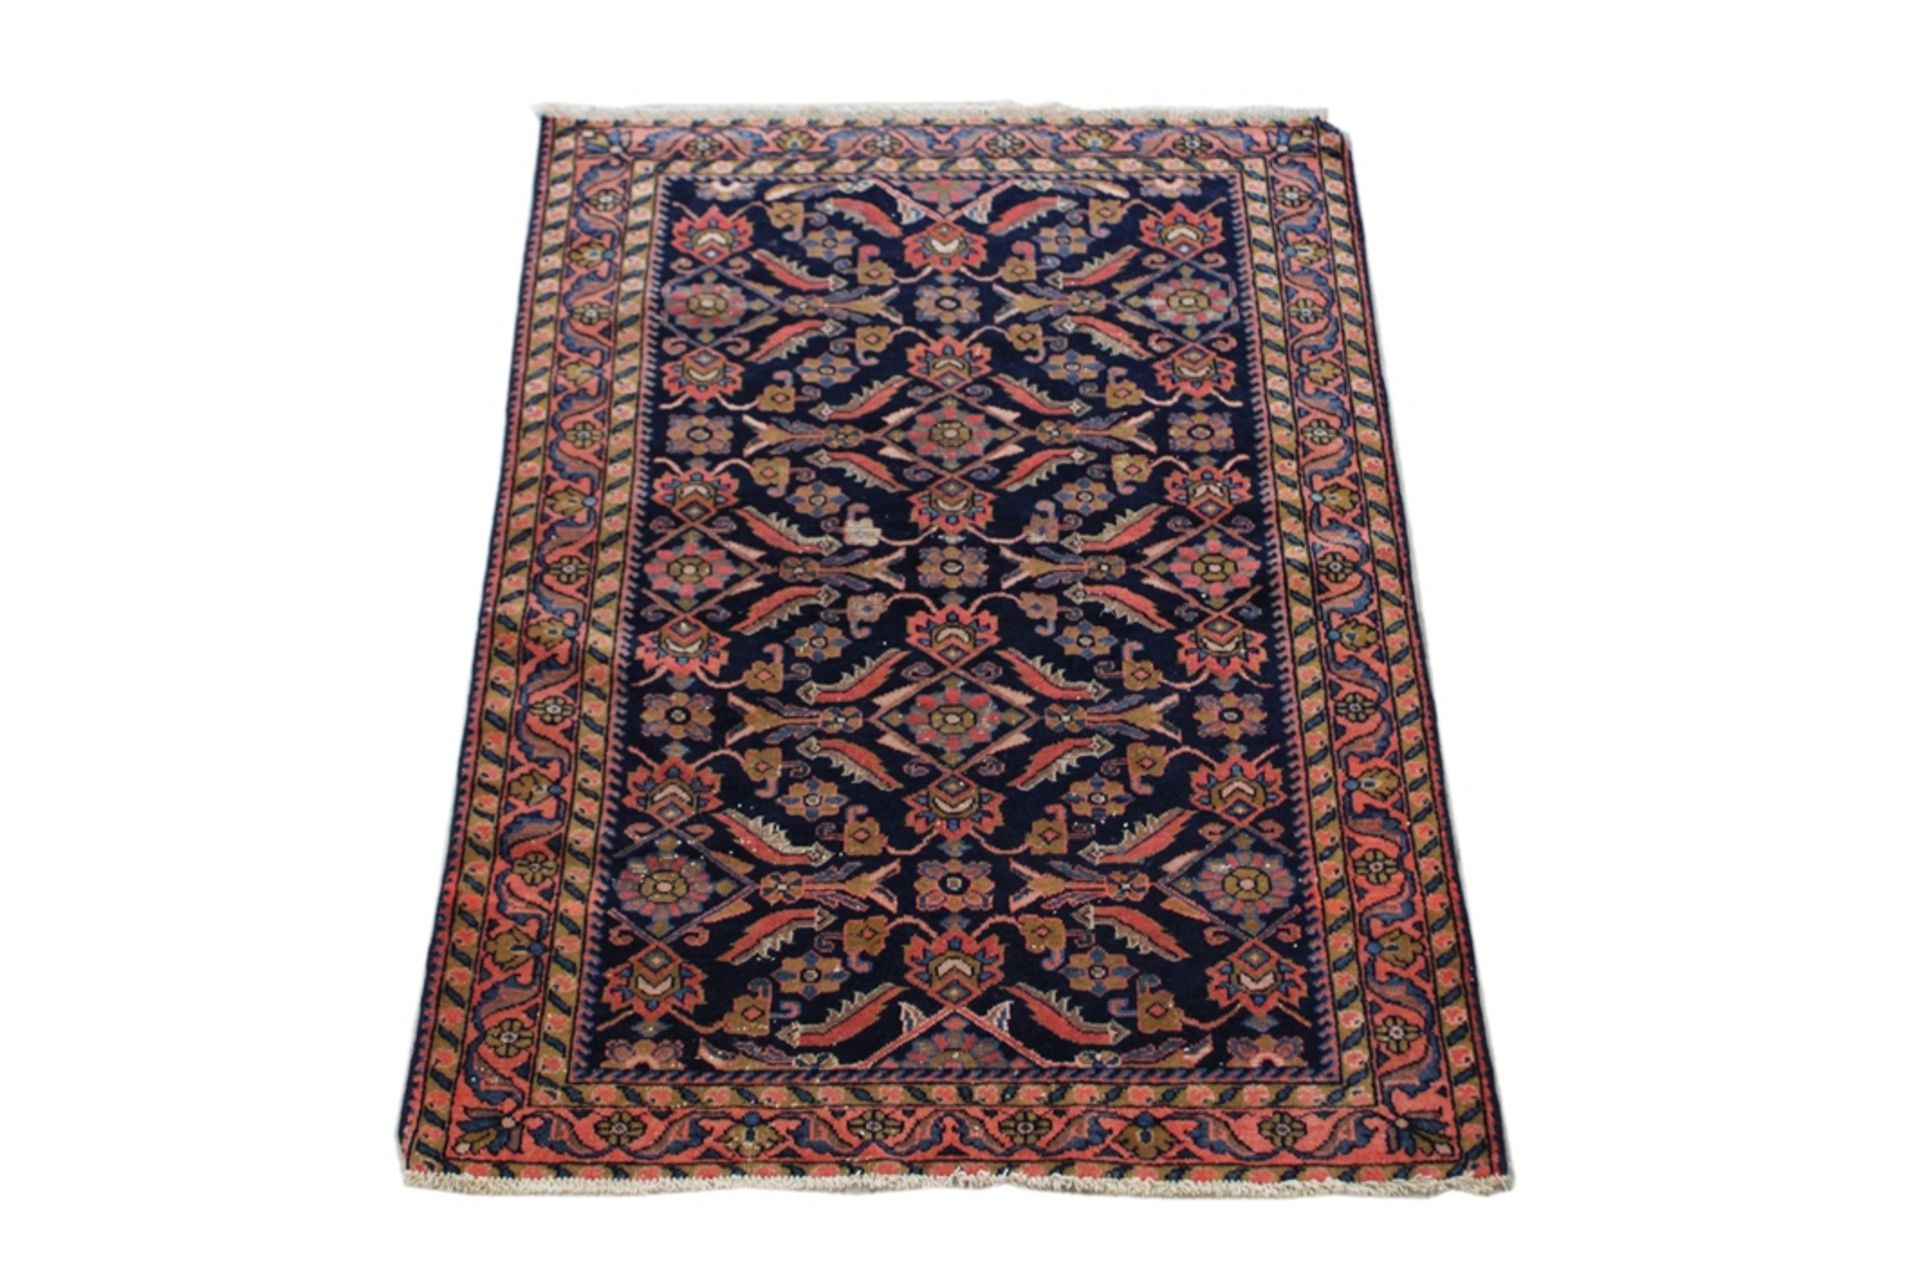 Malayer Teppiche, Maße: 142 x 103 cm. Altersgemäßer Zustand mit Gebrauchsspuren.